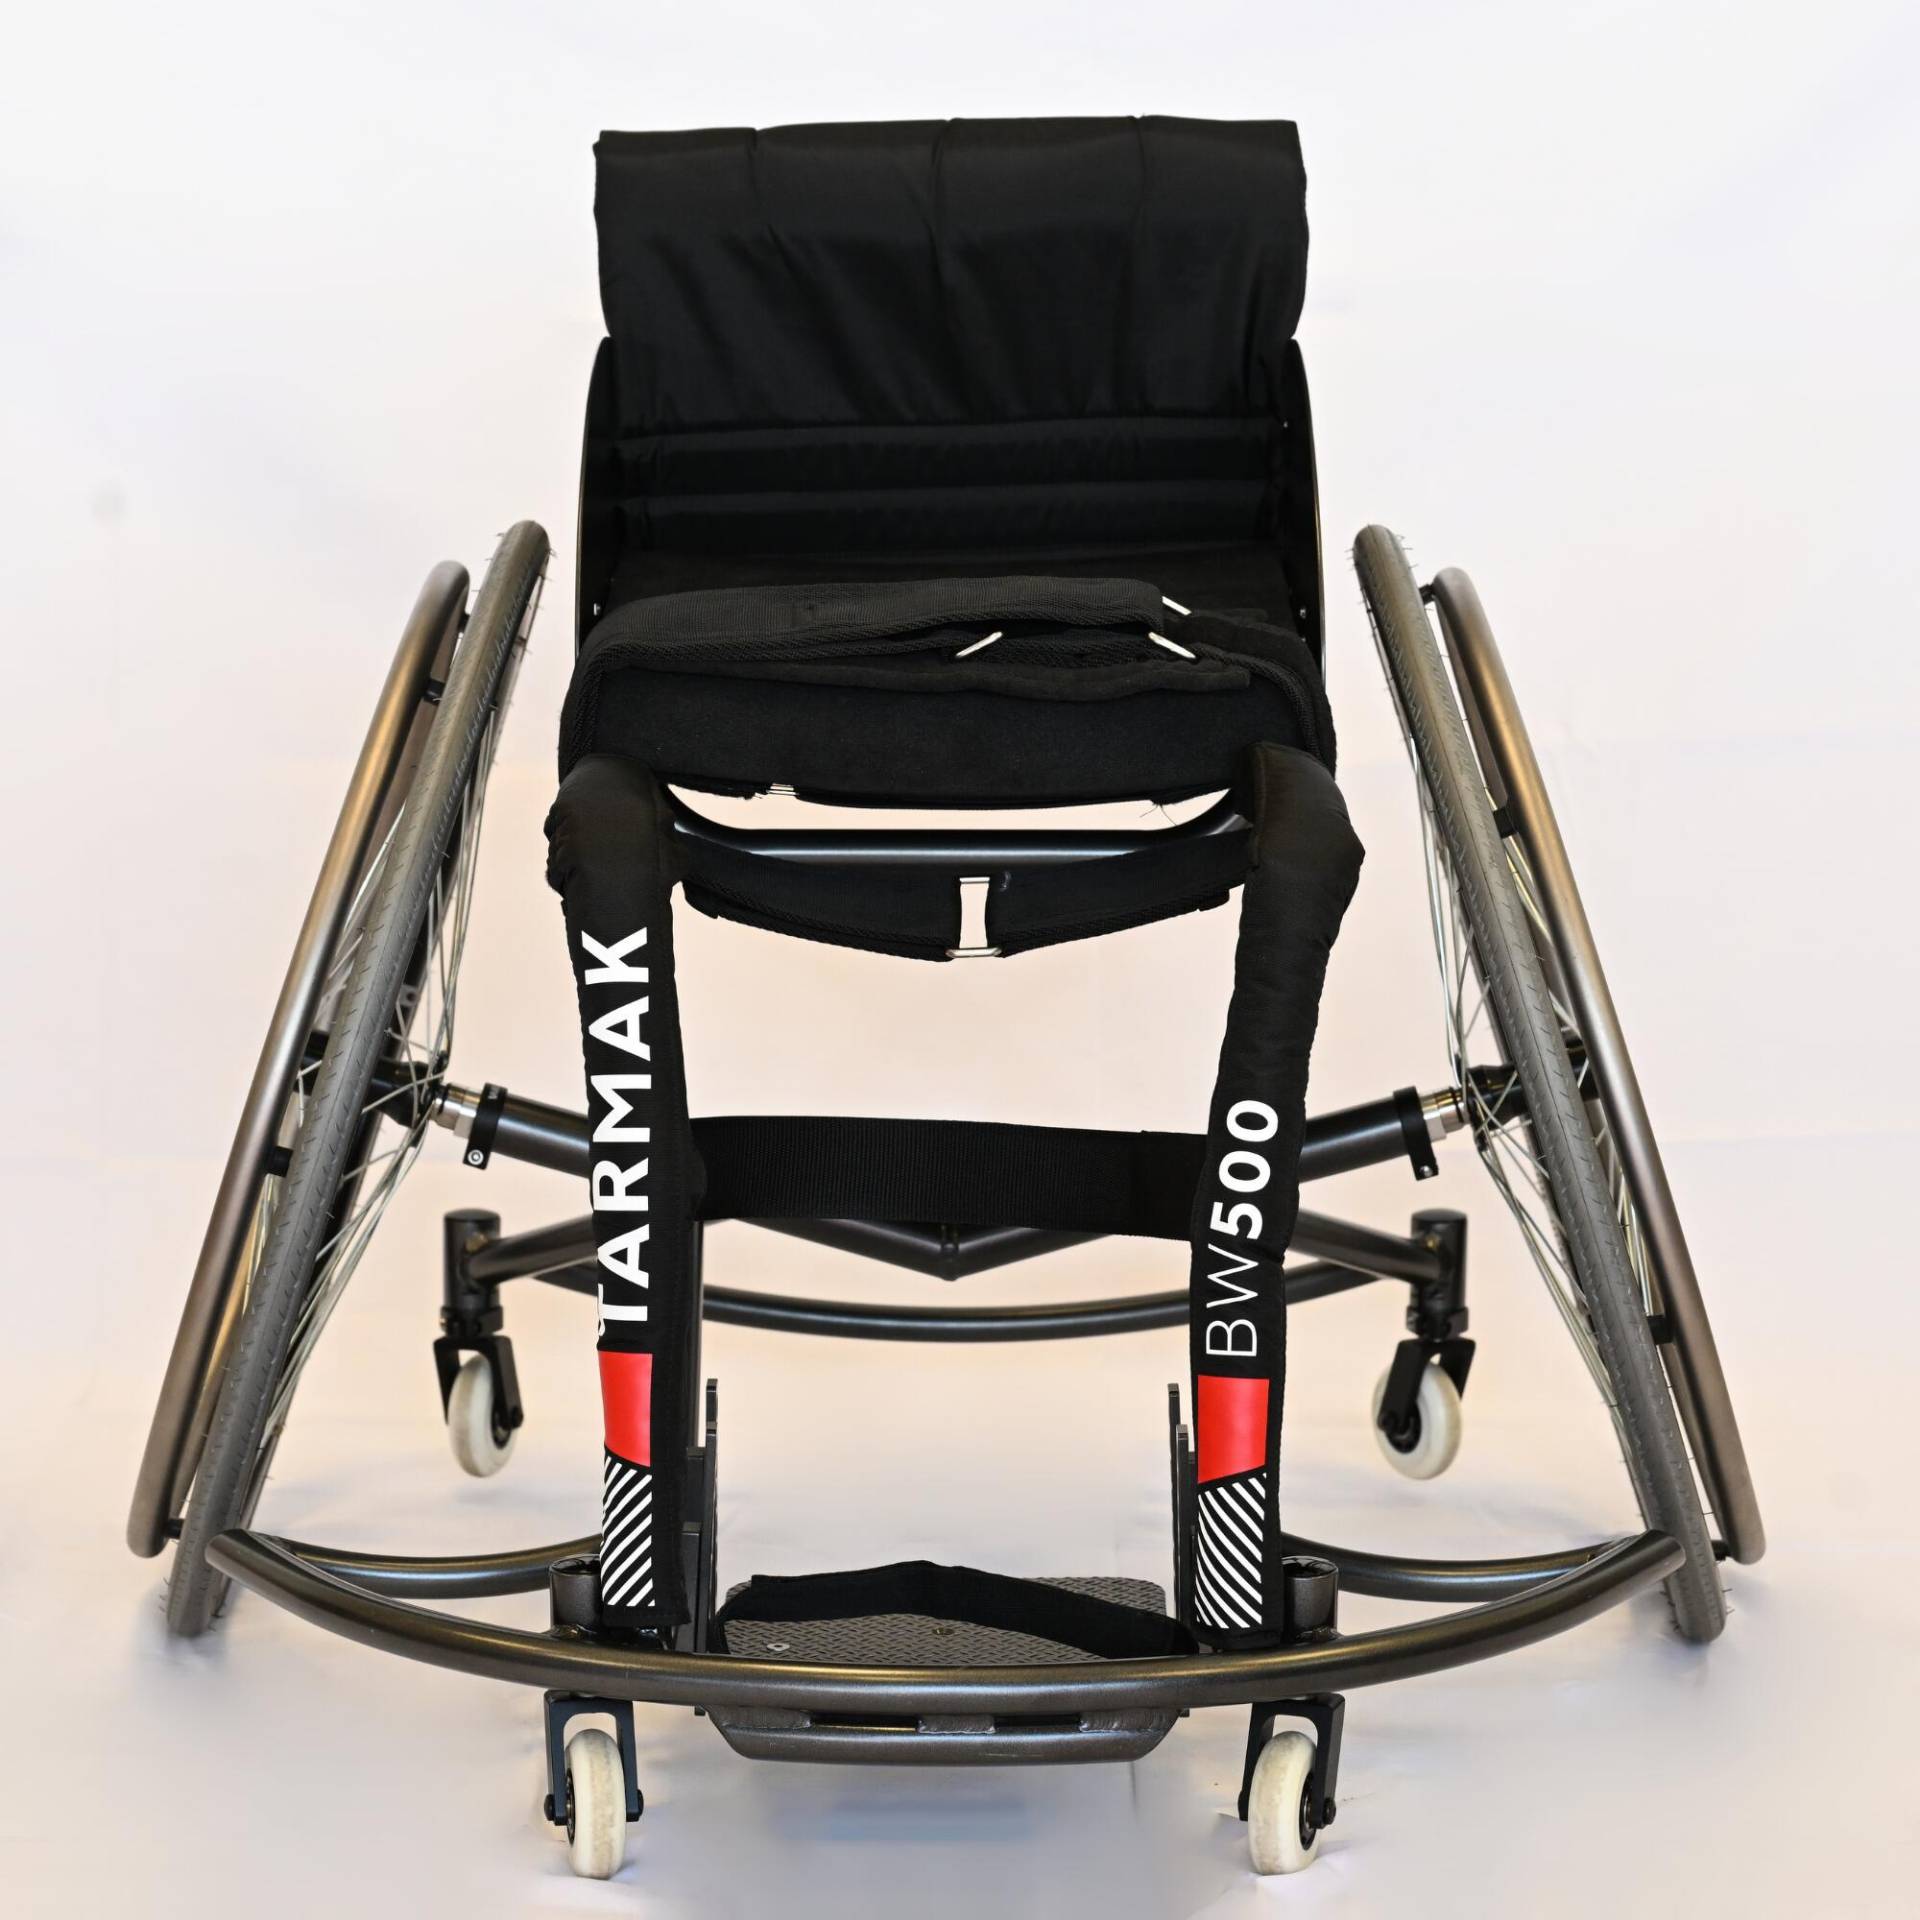 Basketball Rollstuhl 26" verstellbar - BW500 von Decathlon